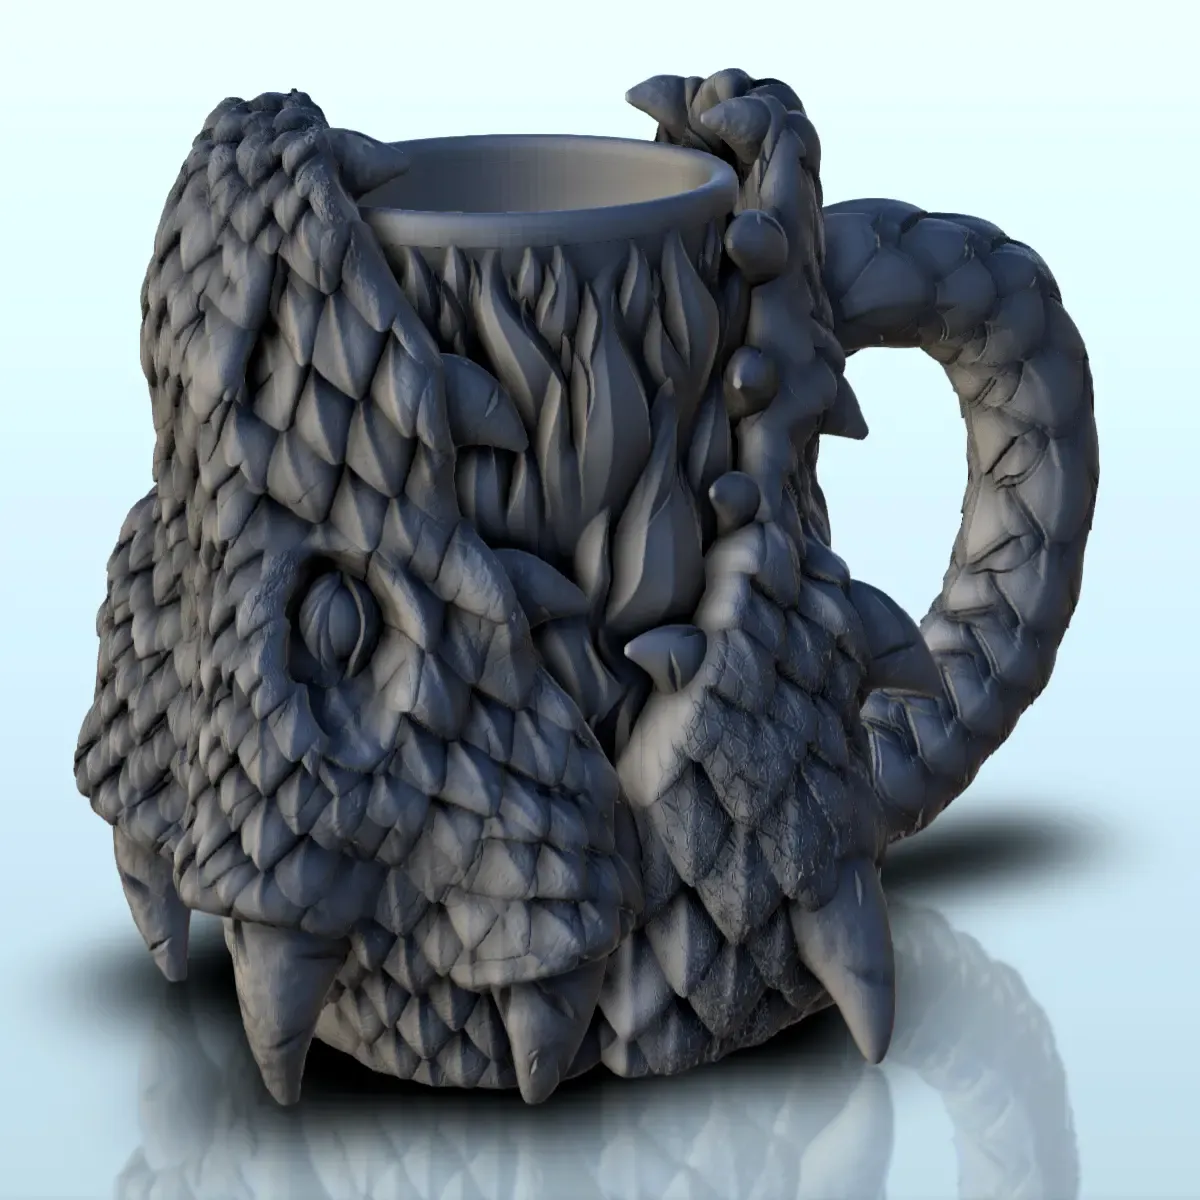 Rogue dragon dice mug (1) - beer can holder